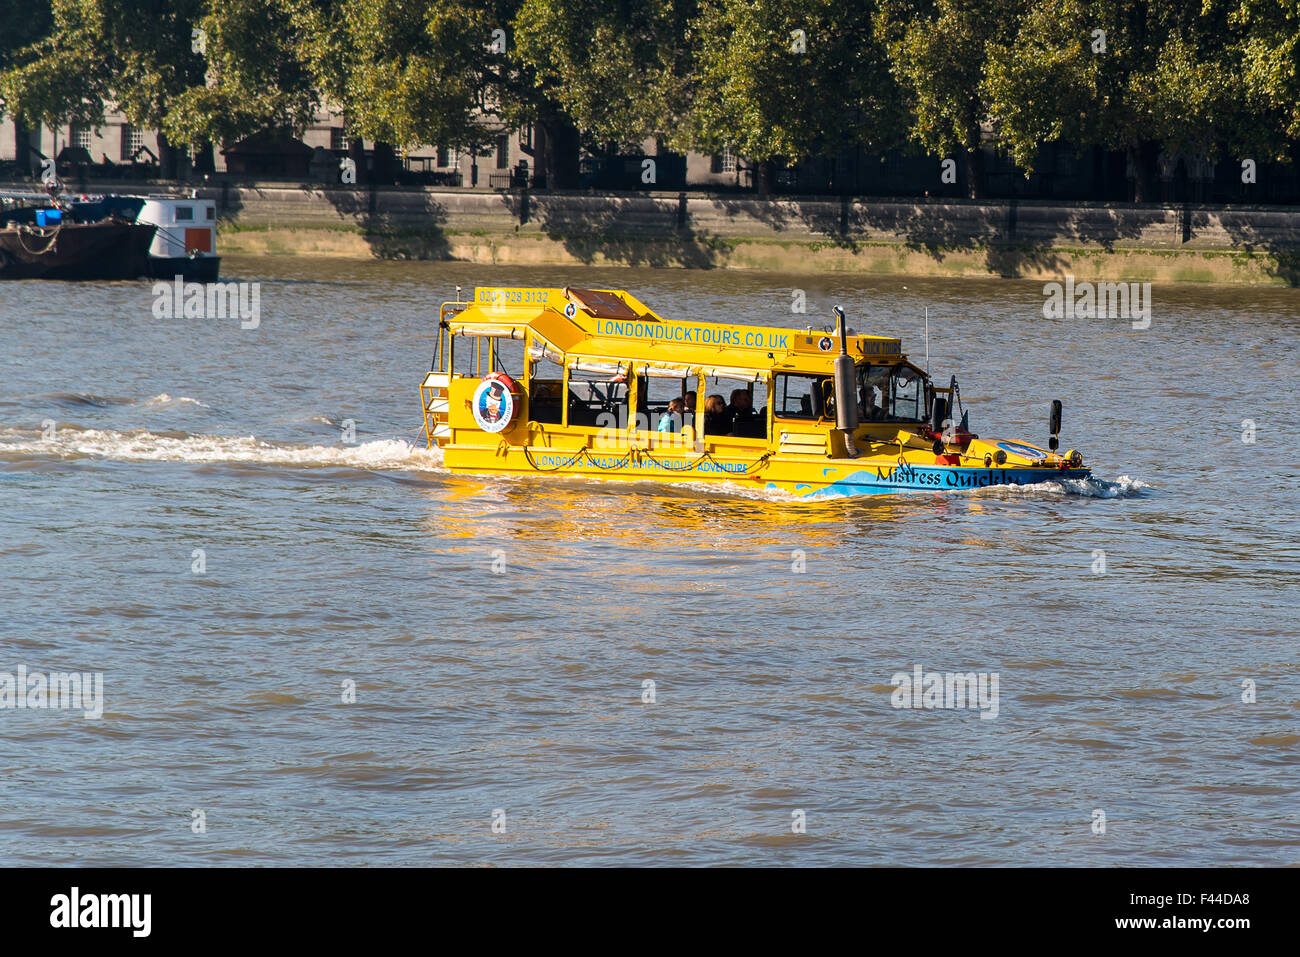 Un véhicule amphibie exploités comme une attraction touristique par London Duck Tours Banque D'Images